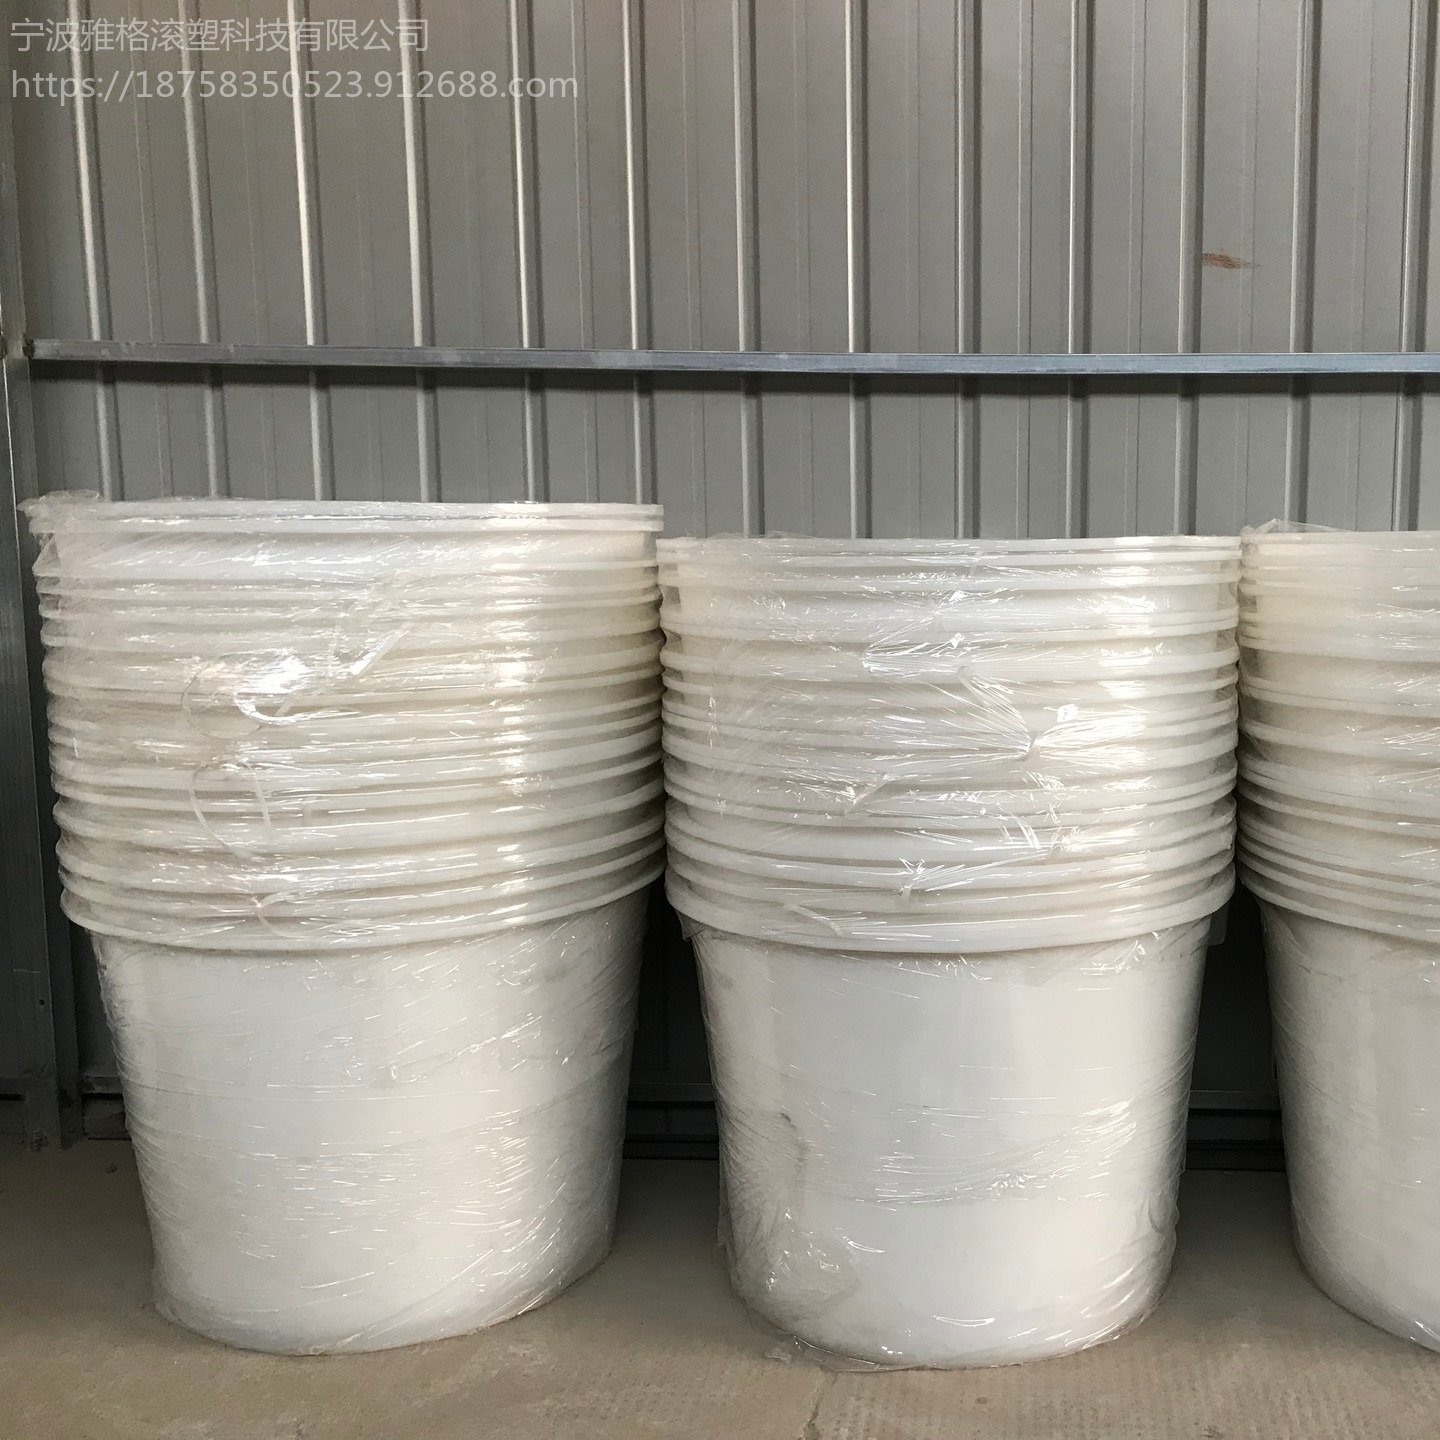 腌制圆桶 雅格加厚牛筋塑料圆桶 酿酒发酵桶 化工储水腌制桶厂家